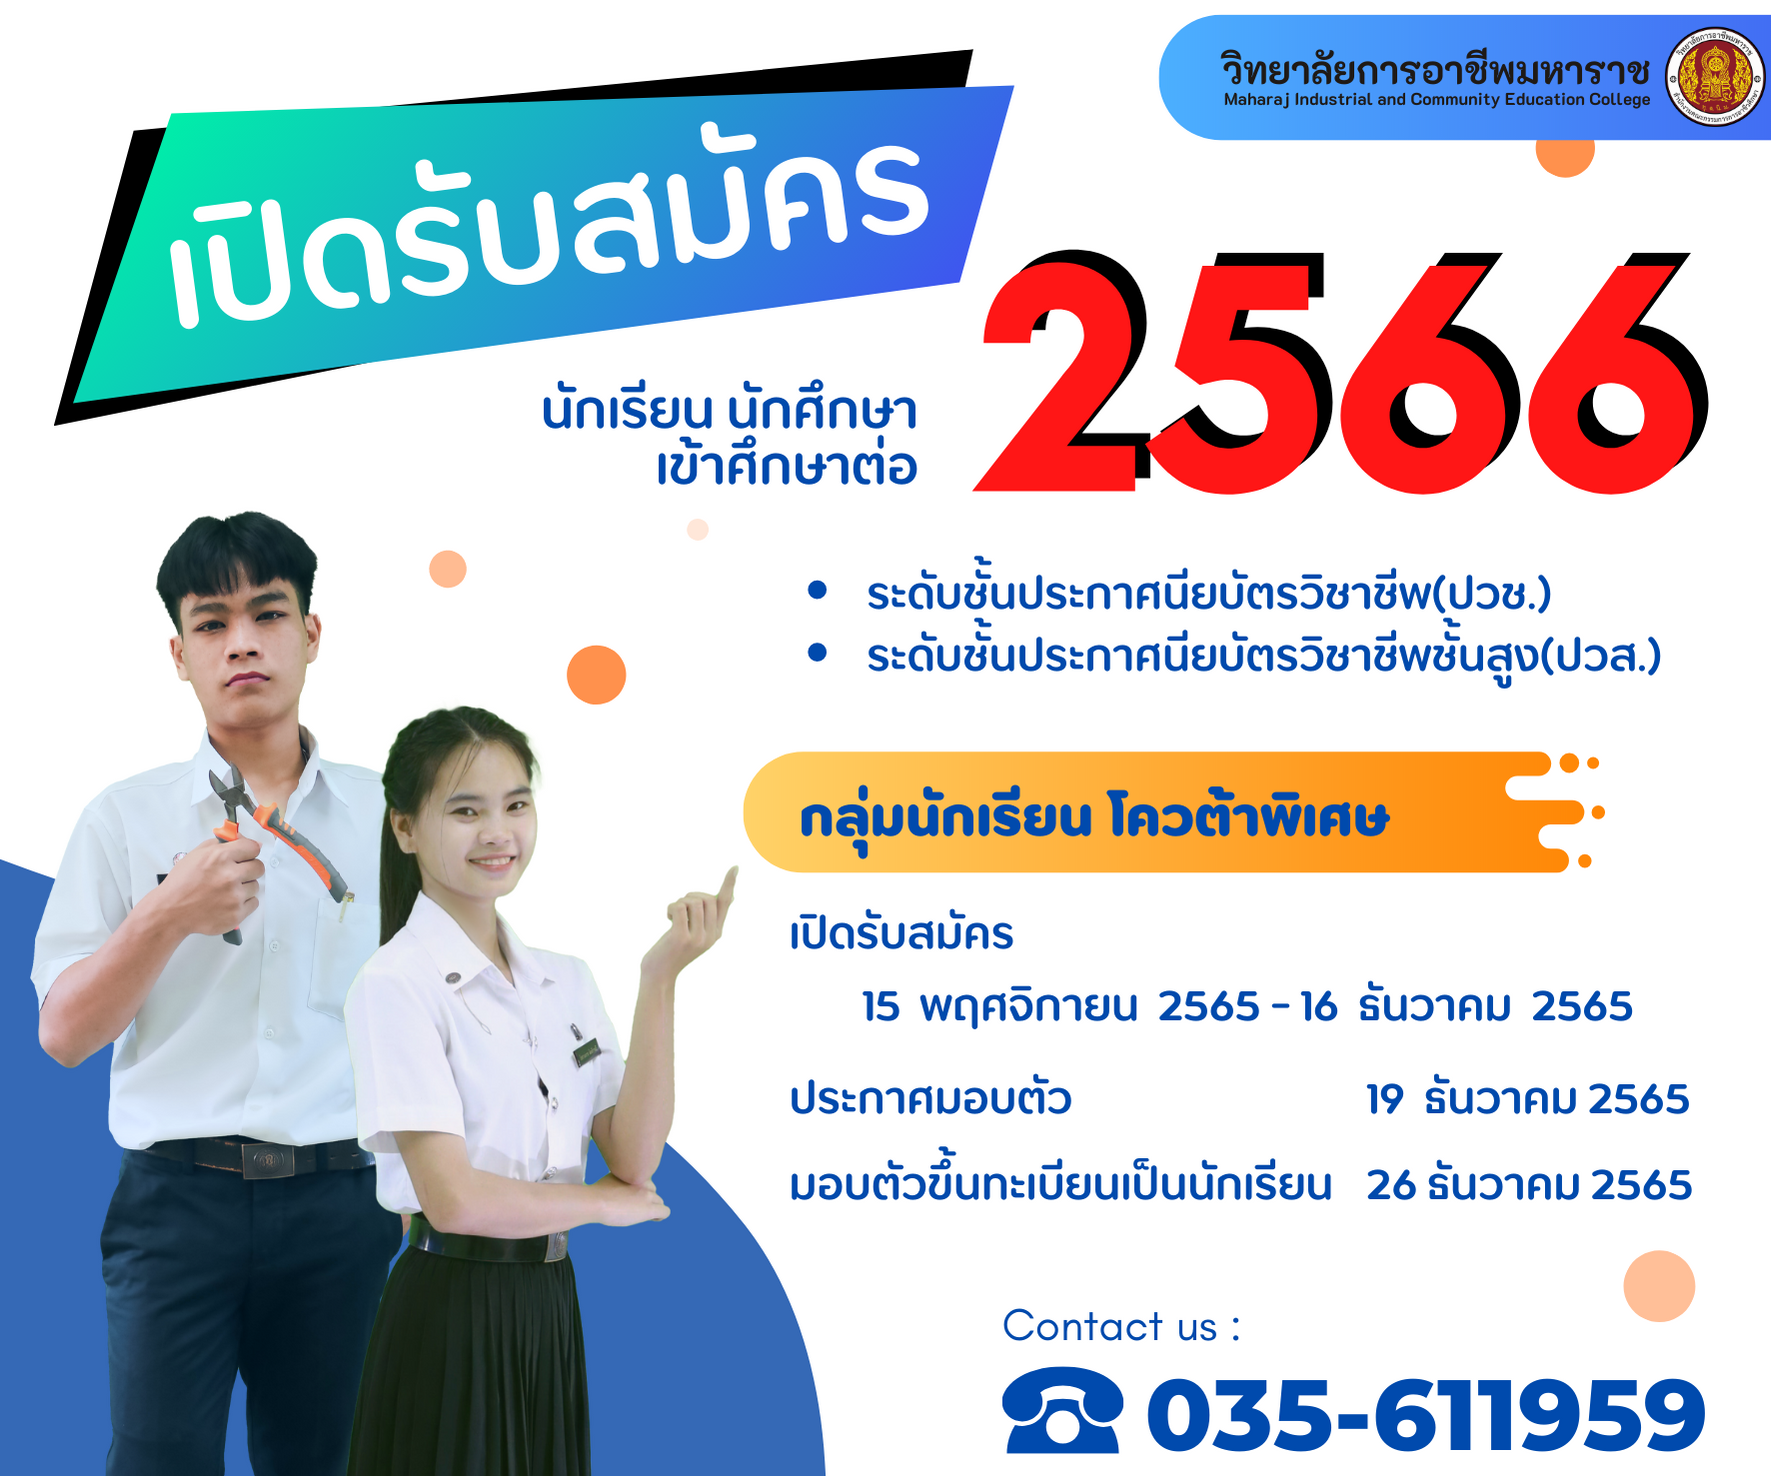 ประกาศ การรับสมัครนักเรียน นักศึกษาเข้าศึกษาต่อ ประจำปีการศึกษา 2566 (รอบโควต้า)